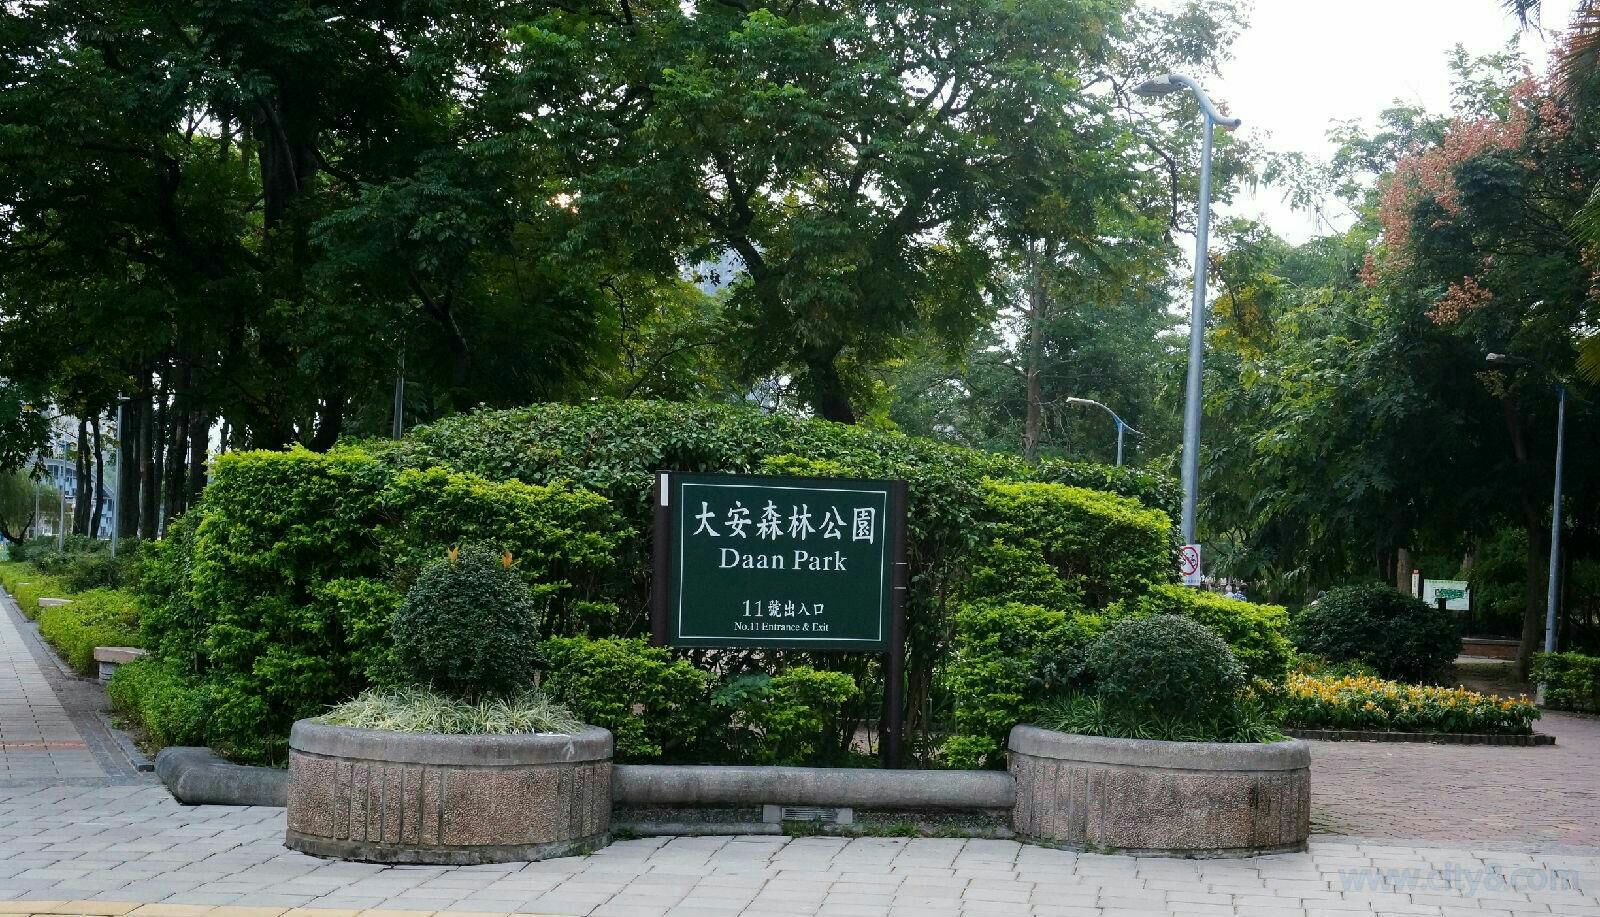 台北大安森林公园好玩吗,台北大安森林公园景点怎么样